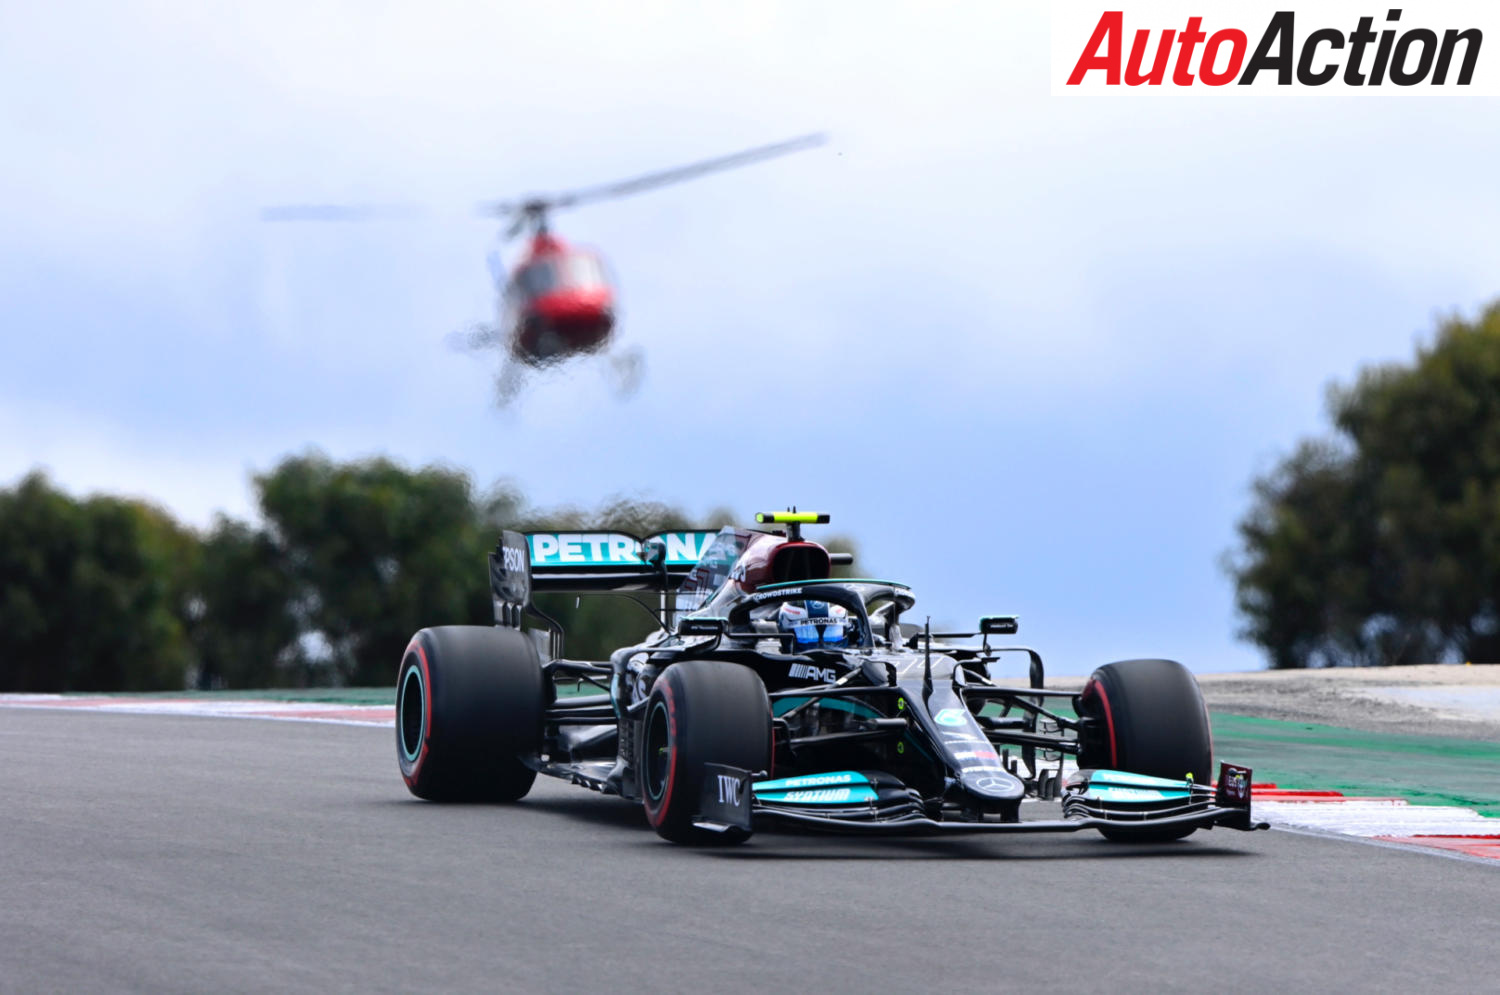 Valtteri Bottas on pole in Portugal - Image: Motorsport Images